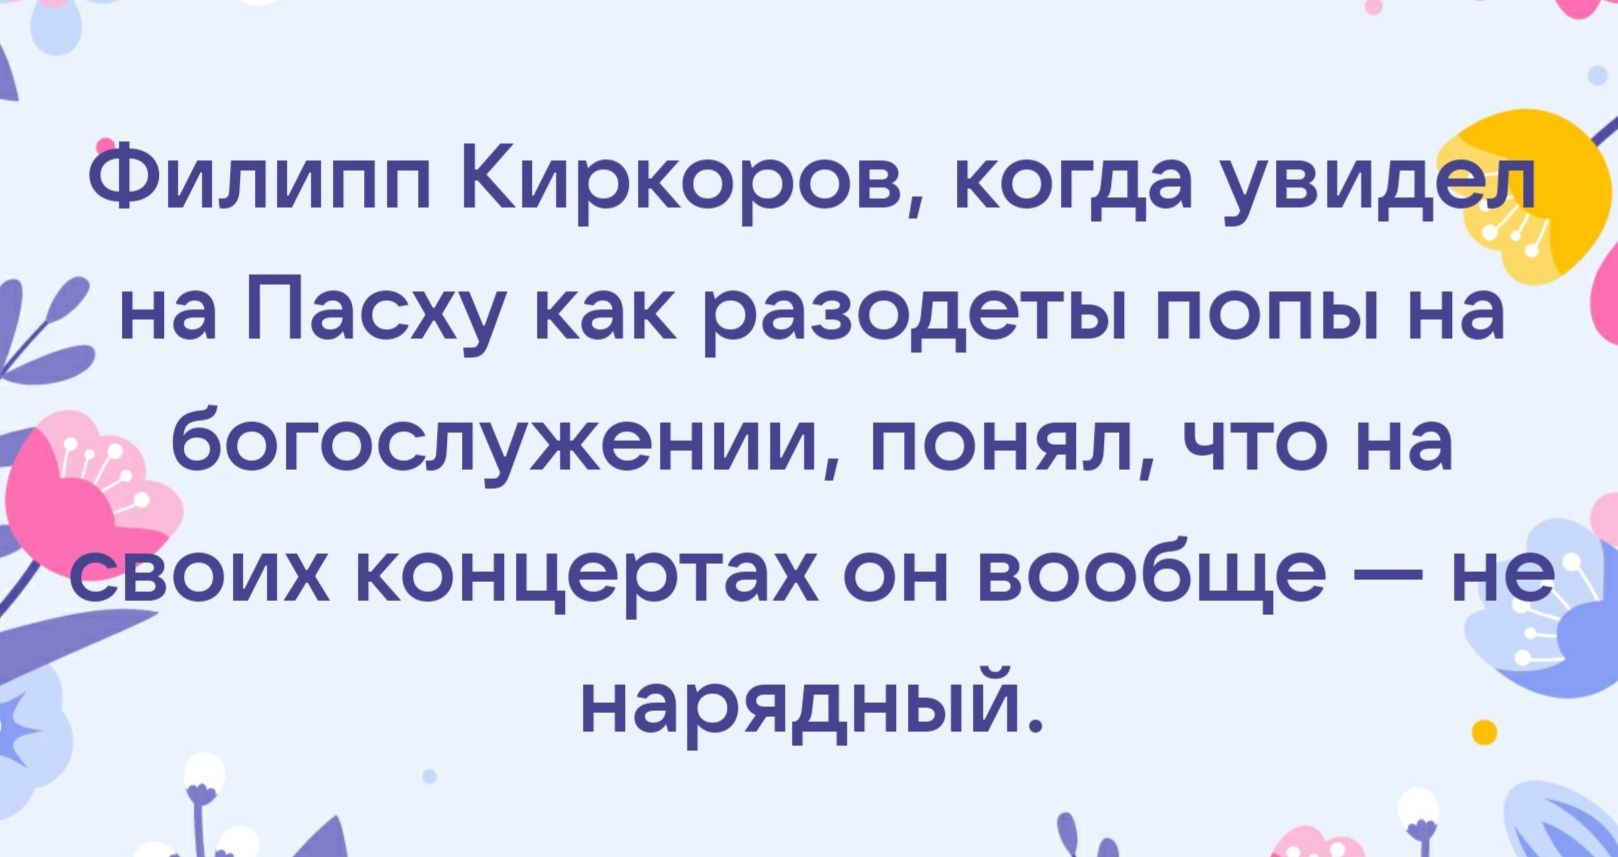 Филипп Киркоров когда увидя на Пасху как разодеты попы на богослужении понял что на Ьоих концертах он вообще на нарядный Т А _